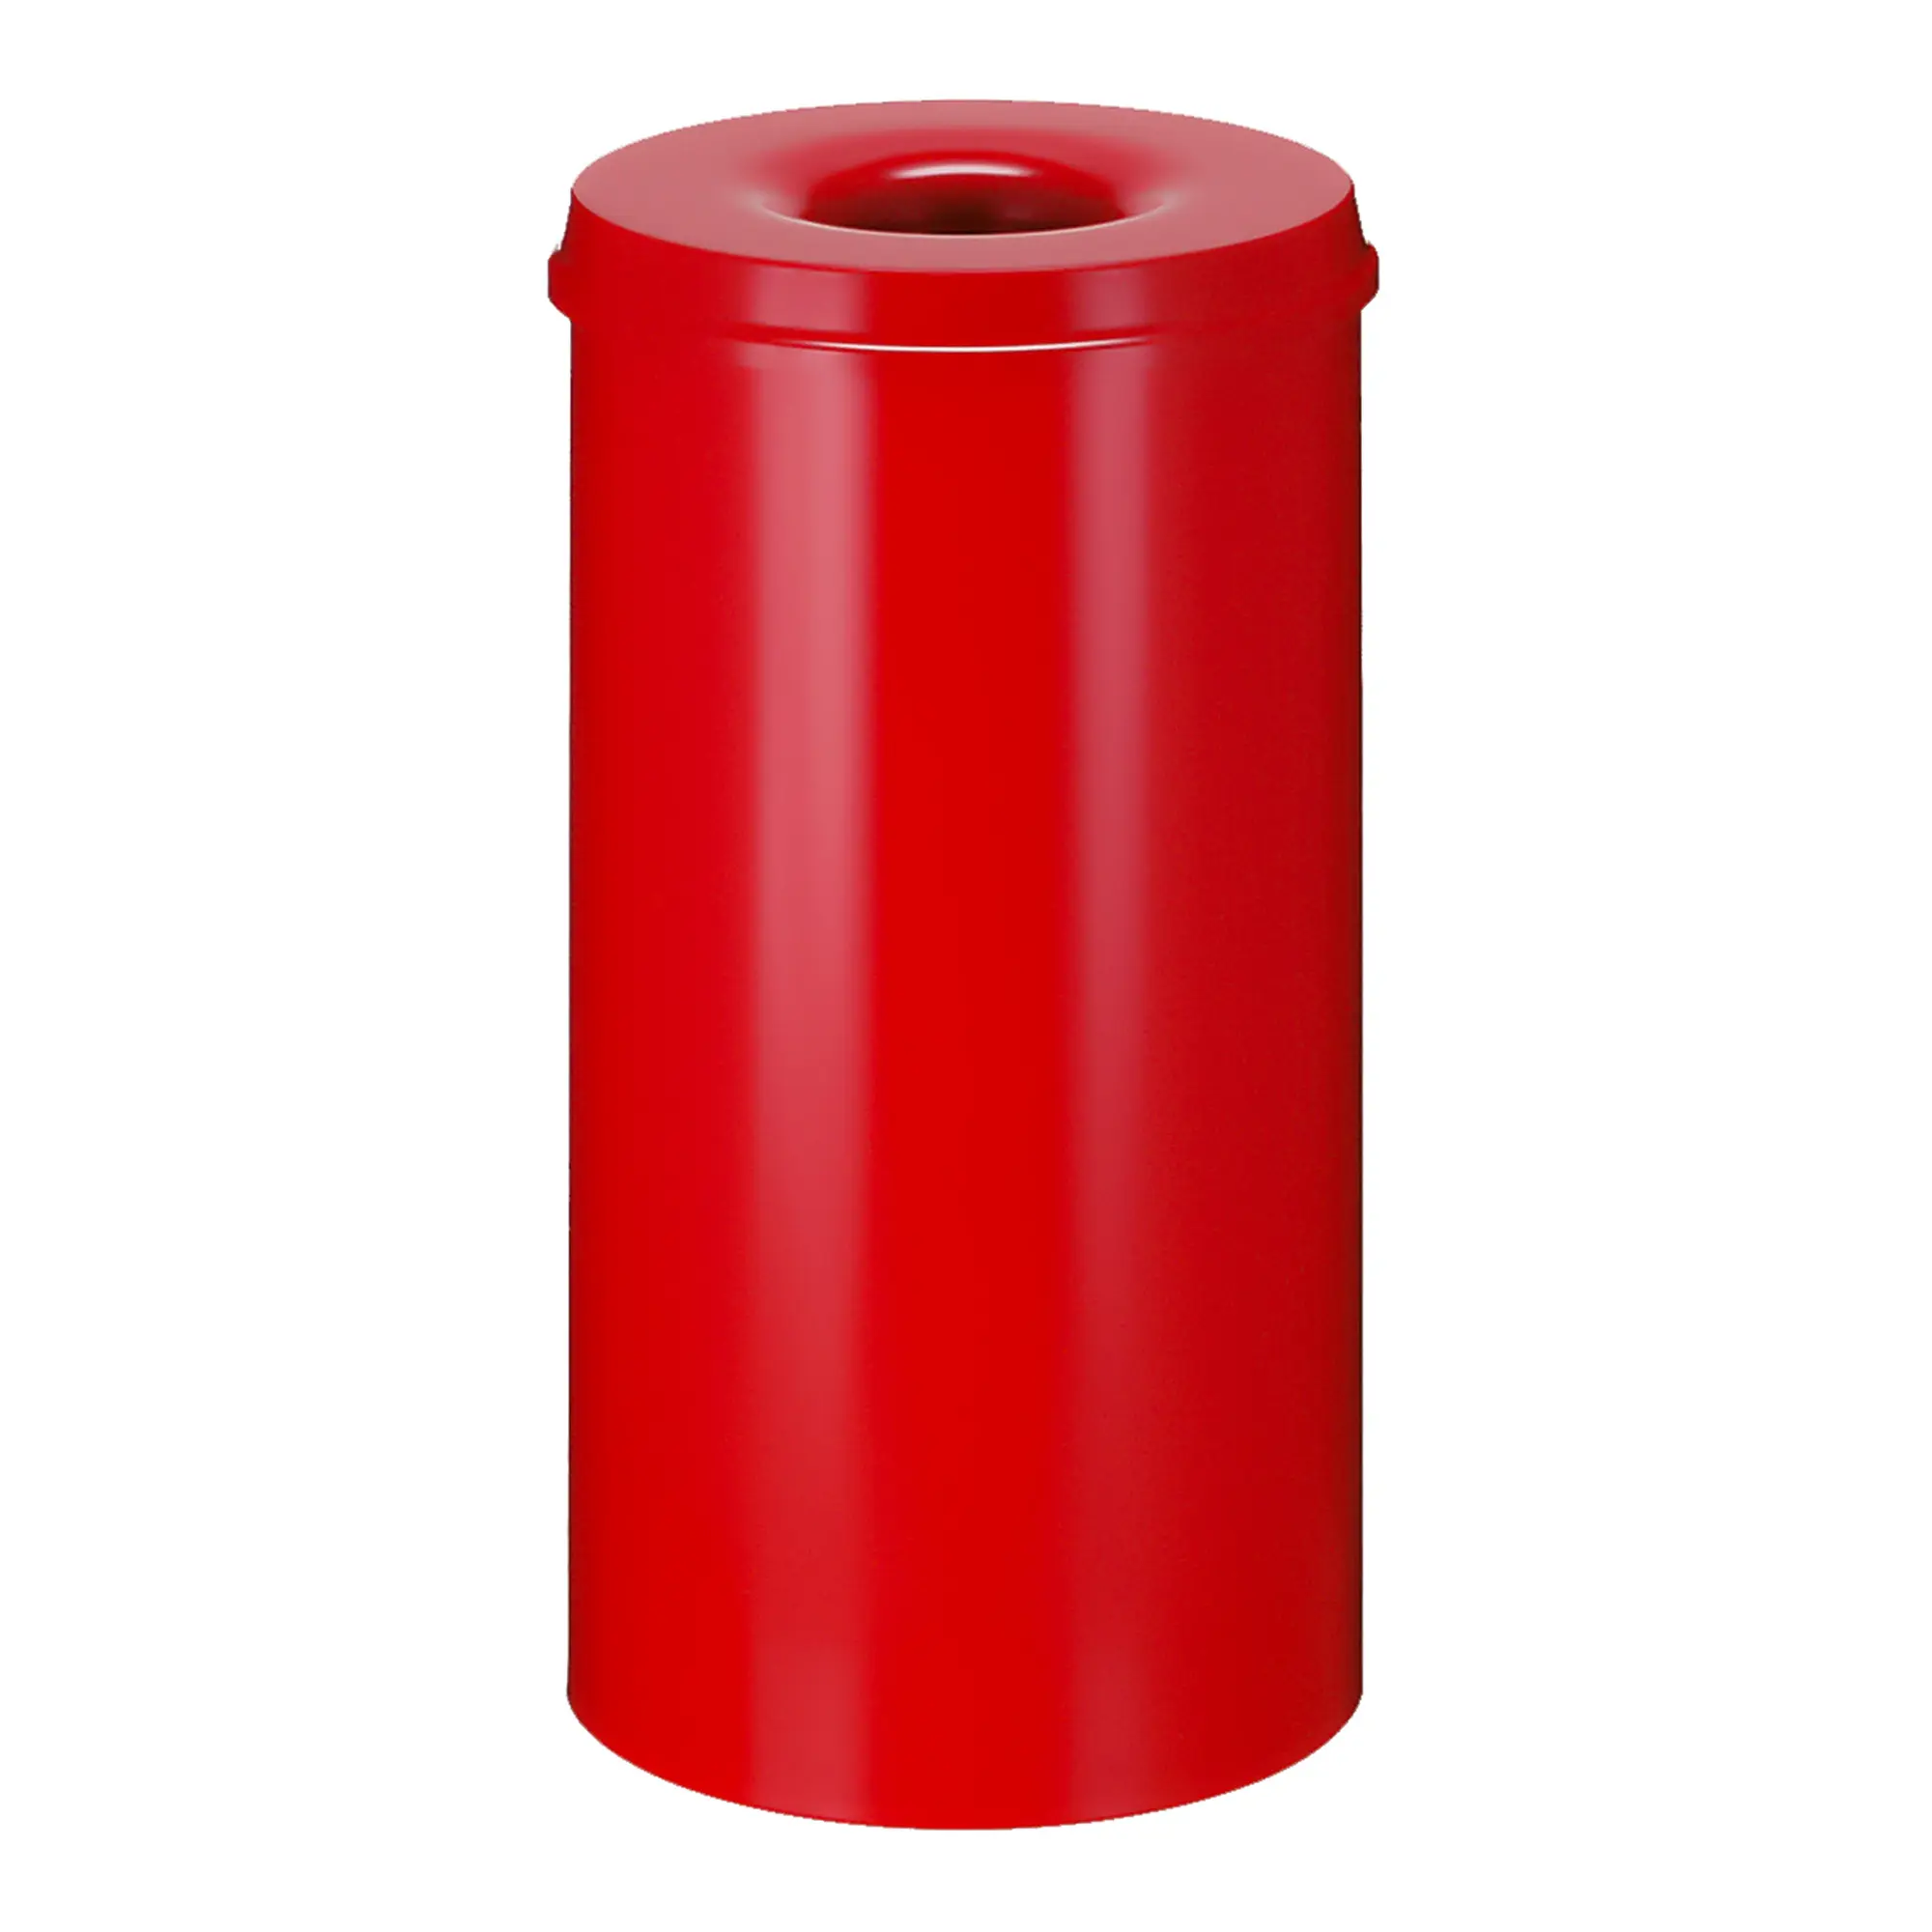 V-Part Feuerlöschender Papierkorb 50 Liter rot 31001965_1